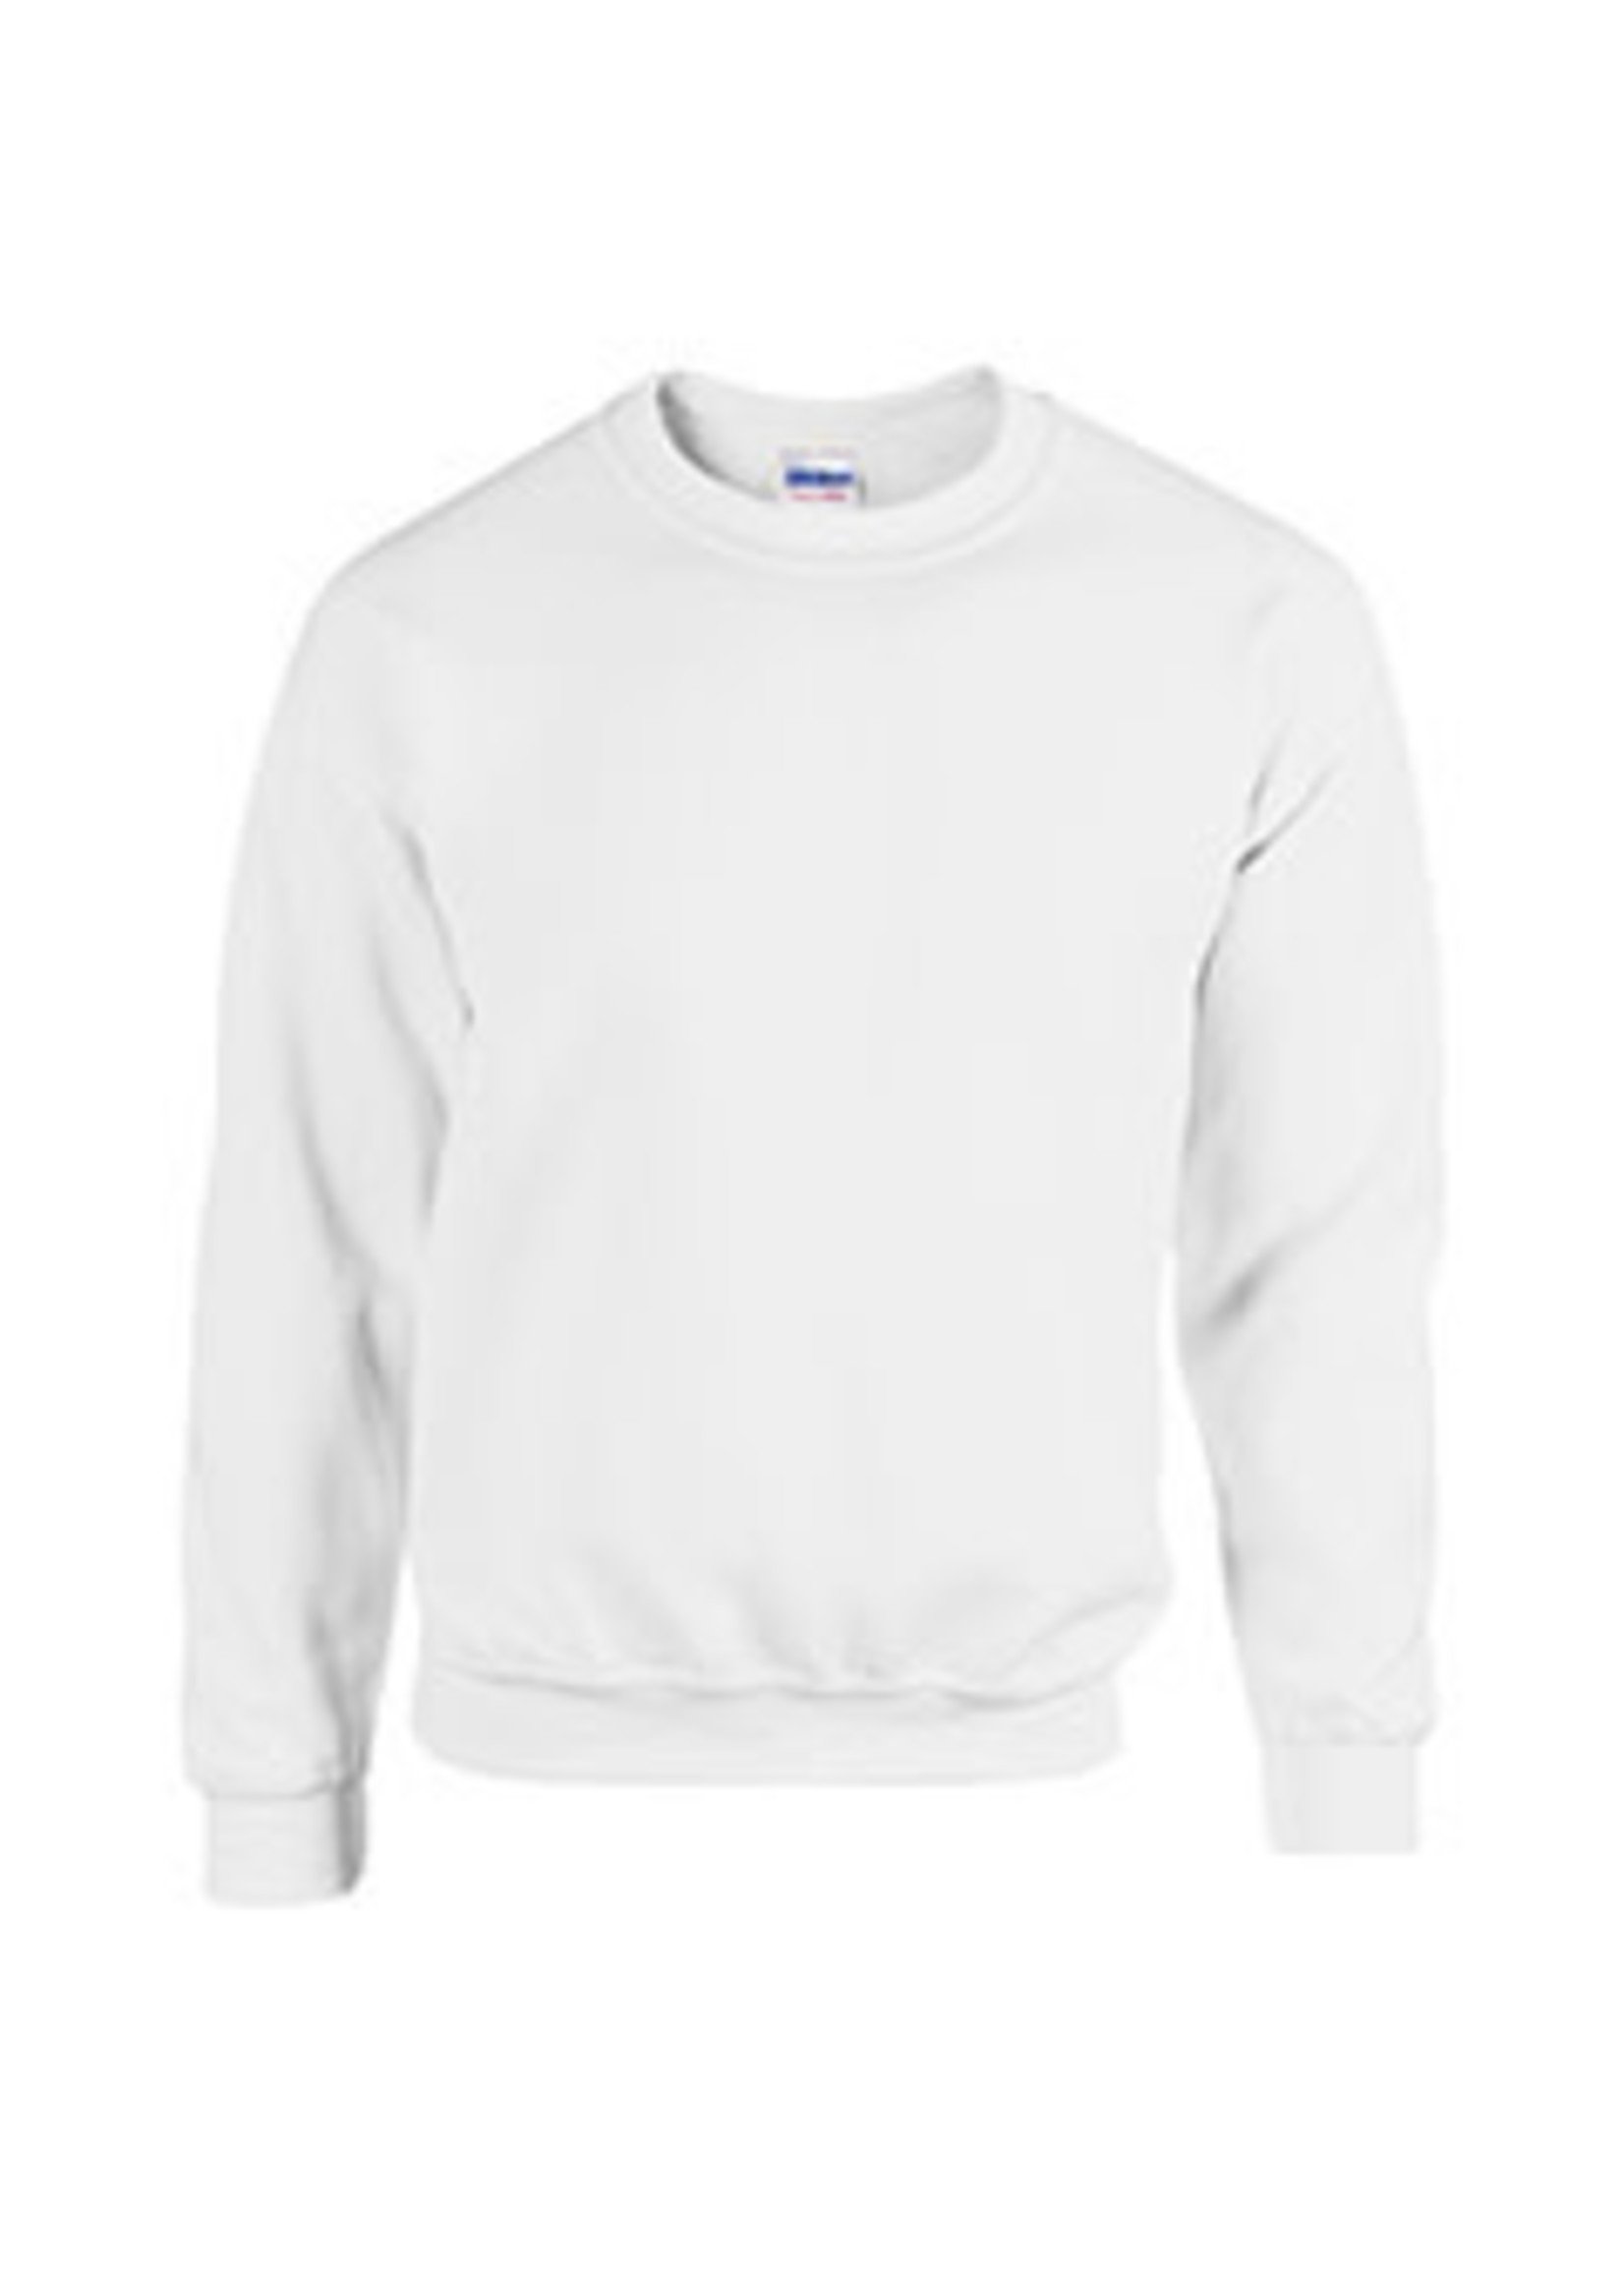 TAG High School Black Cotton Fleece Crew Neck Pullover Sweatshirt